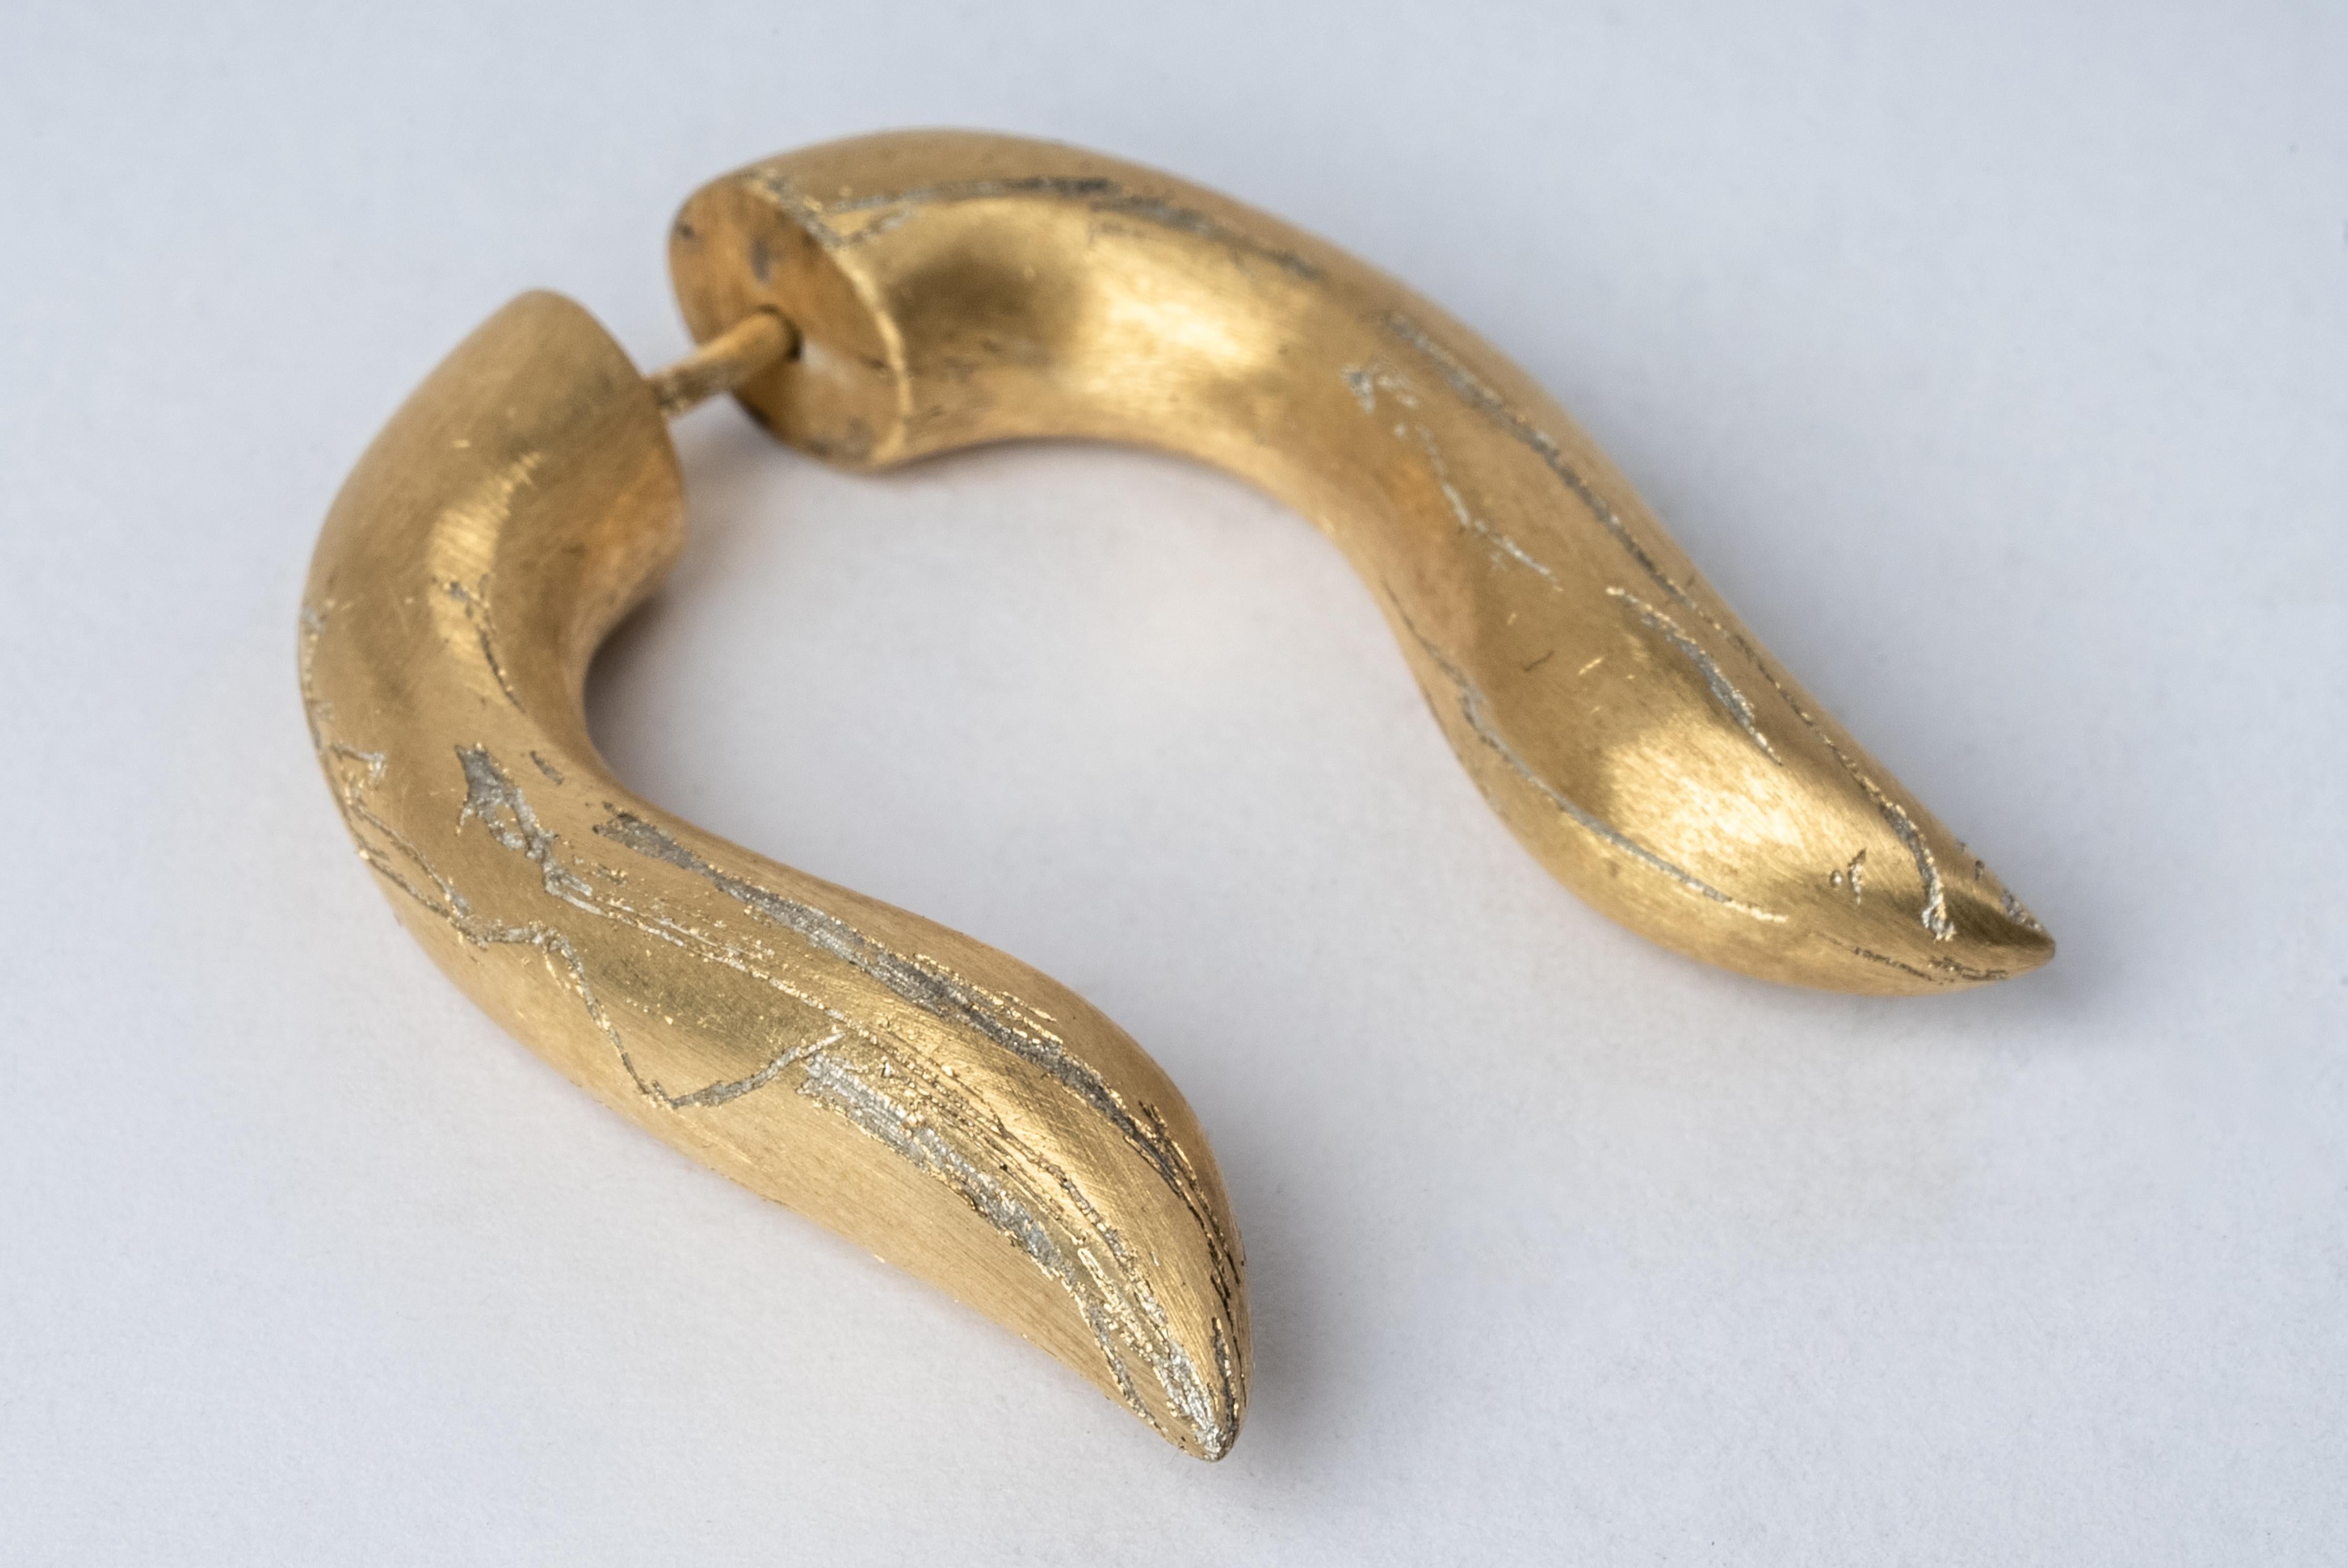 Ohrring in Form von Hathor aus Sterlingsilber. Dieses Schmuckstück wurde sorgfältig mit 18-karätigem Gold galvanisiert und anschließend mit einer Säure behandelt. Jedes Stück ist eine einzigartige Mischung aus Eleganz und Kunstfertigkeit.